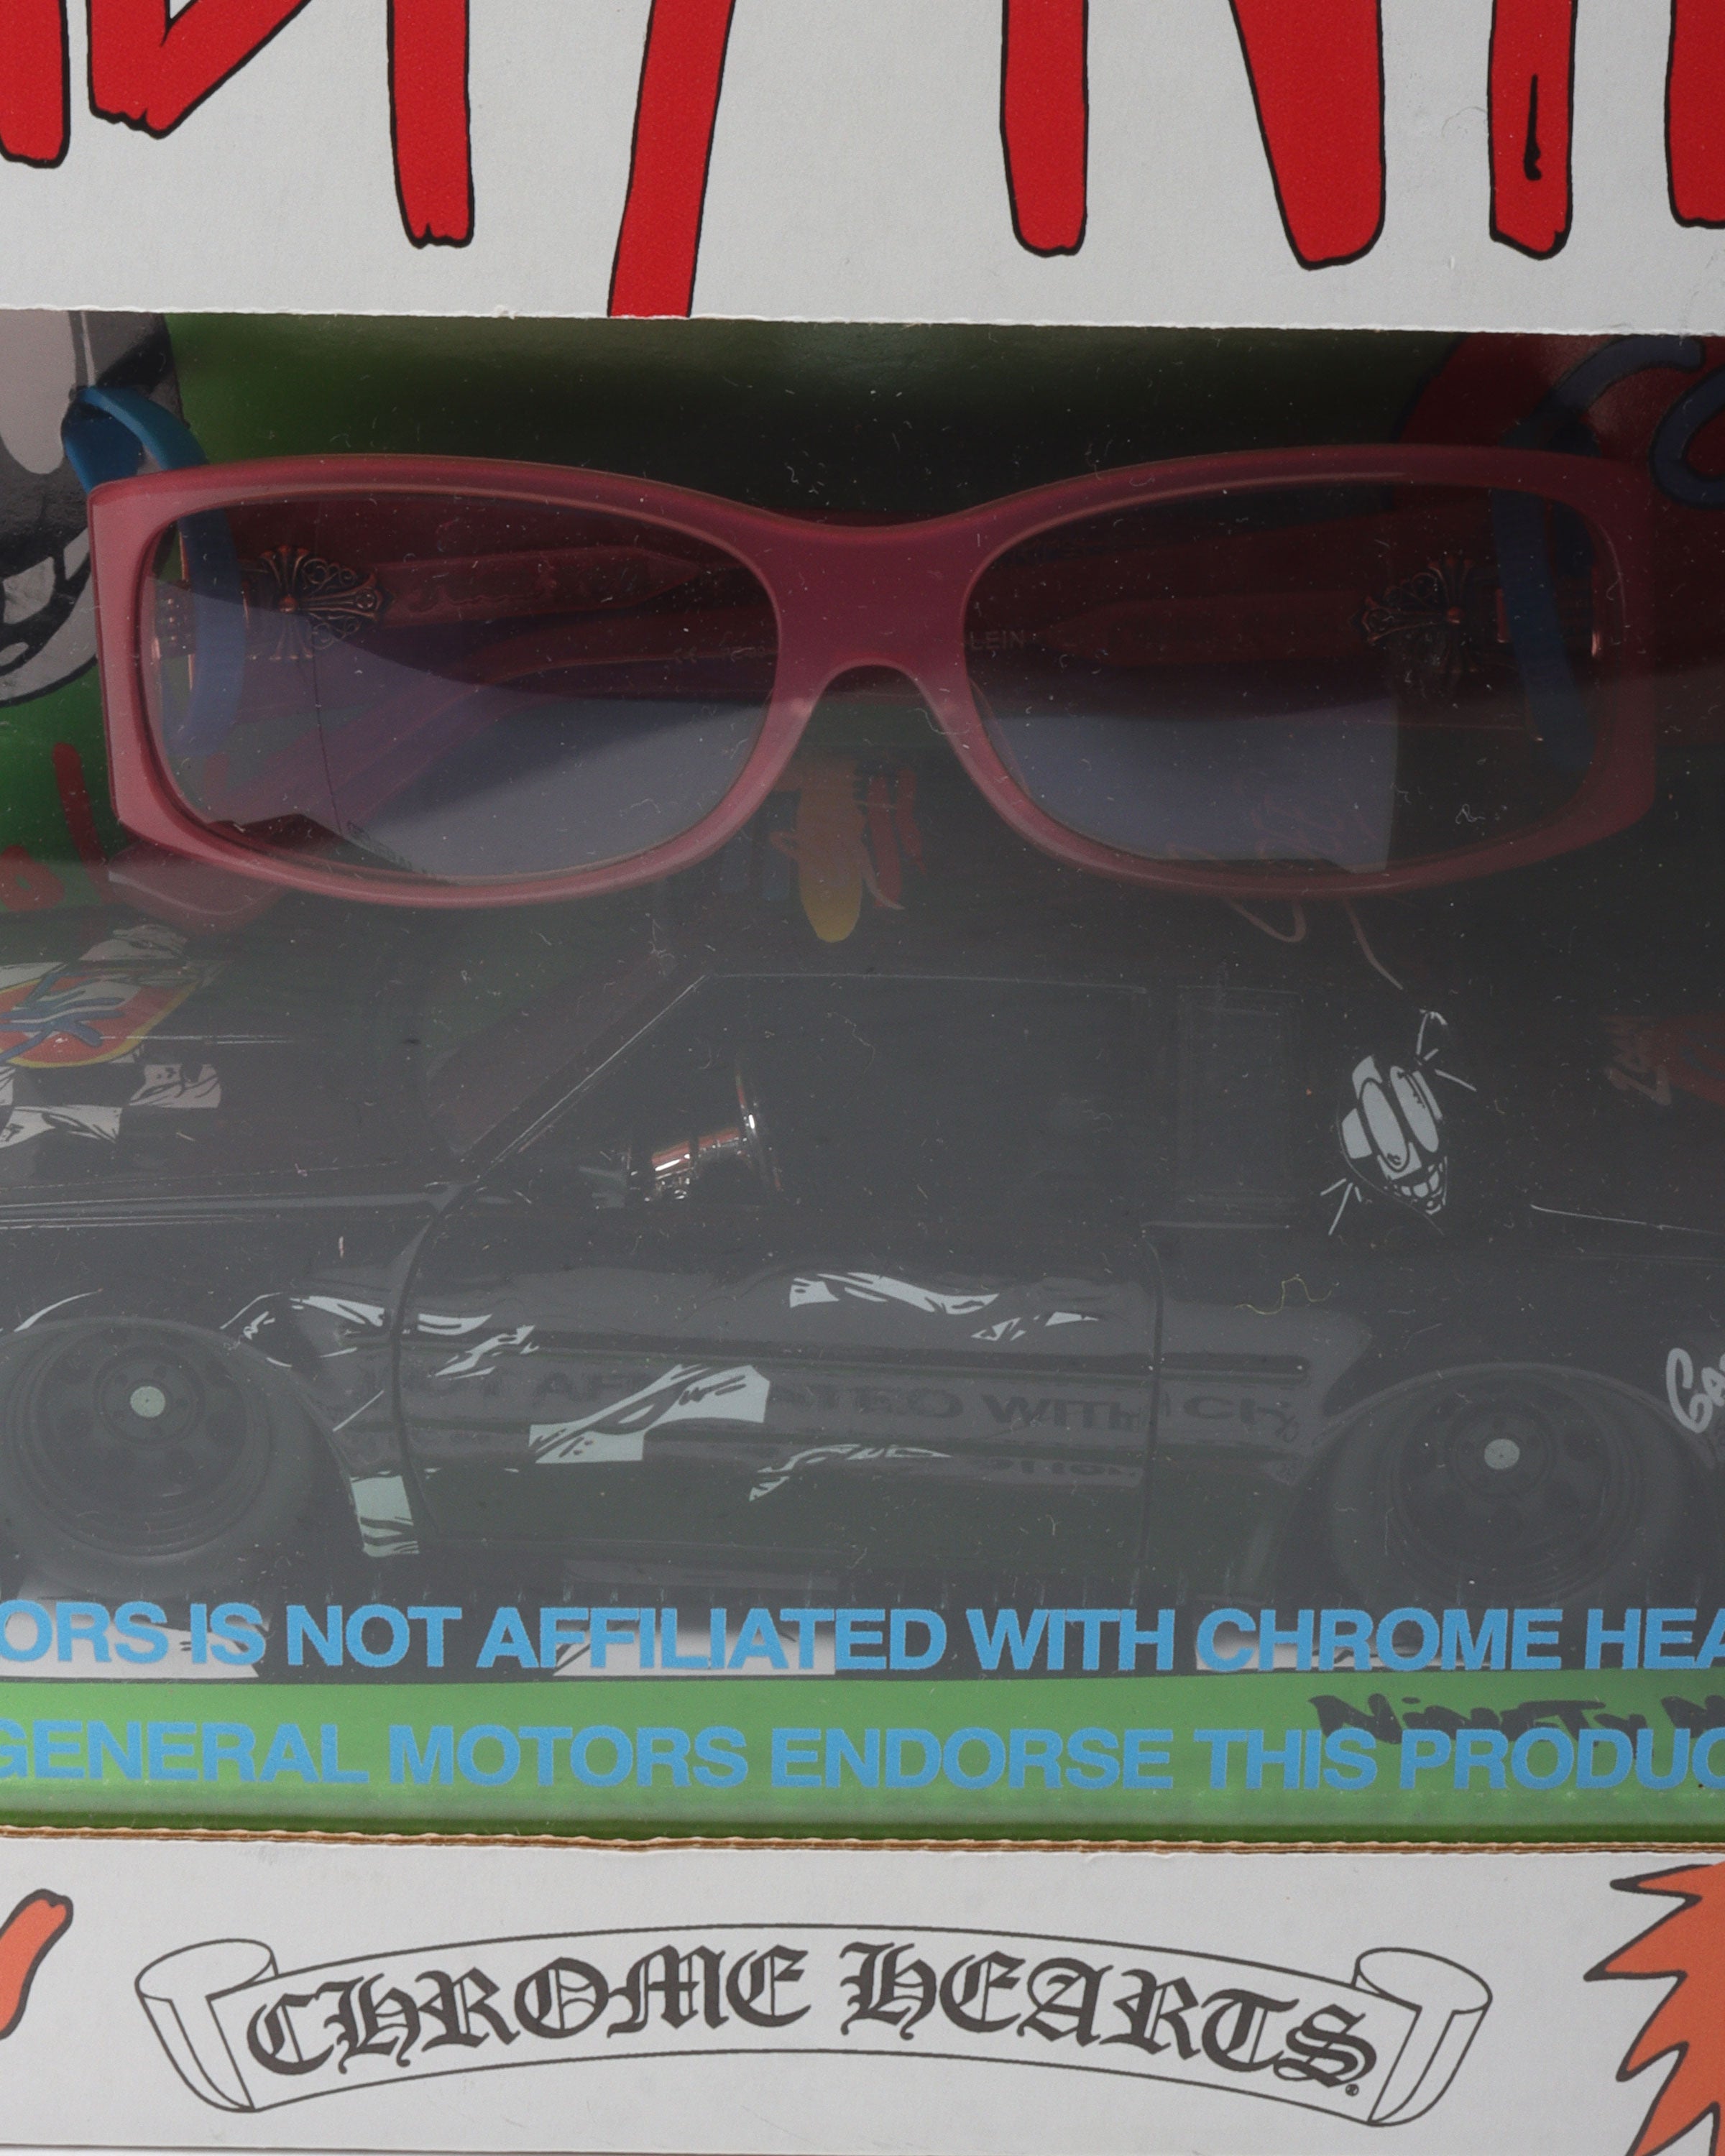 Matty Boy Sex Records 99 Eyes "U LIE'N" Sunglasses & Toy Car